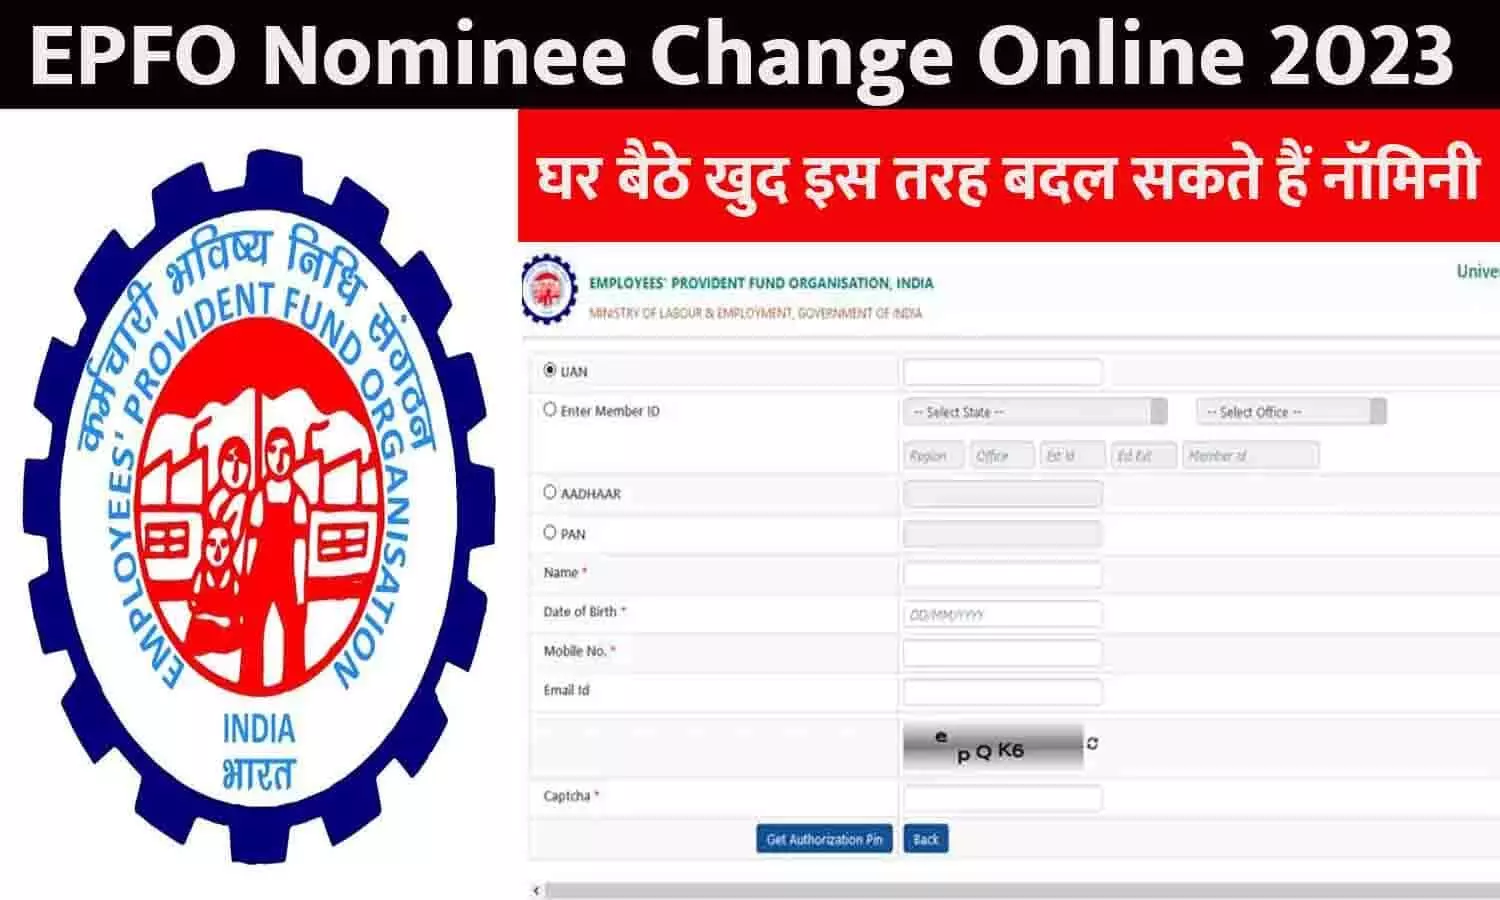 EPFO Nominee Change Online In Hindi 2023: घर बैठे खुद इस तरह बदल सकते हैं नॉमिनी, आसान है तरीका, जानें Details